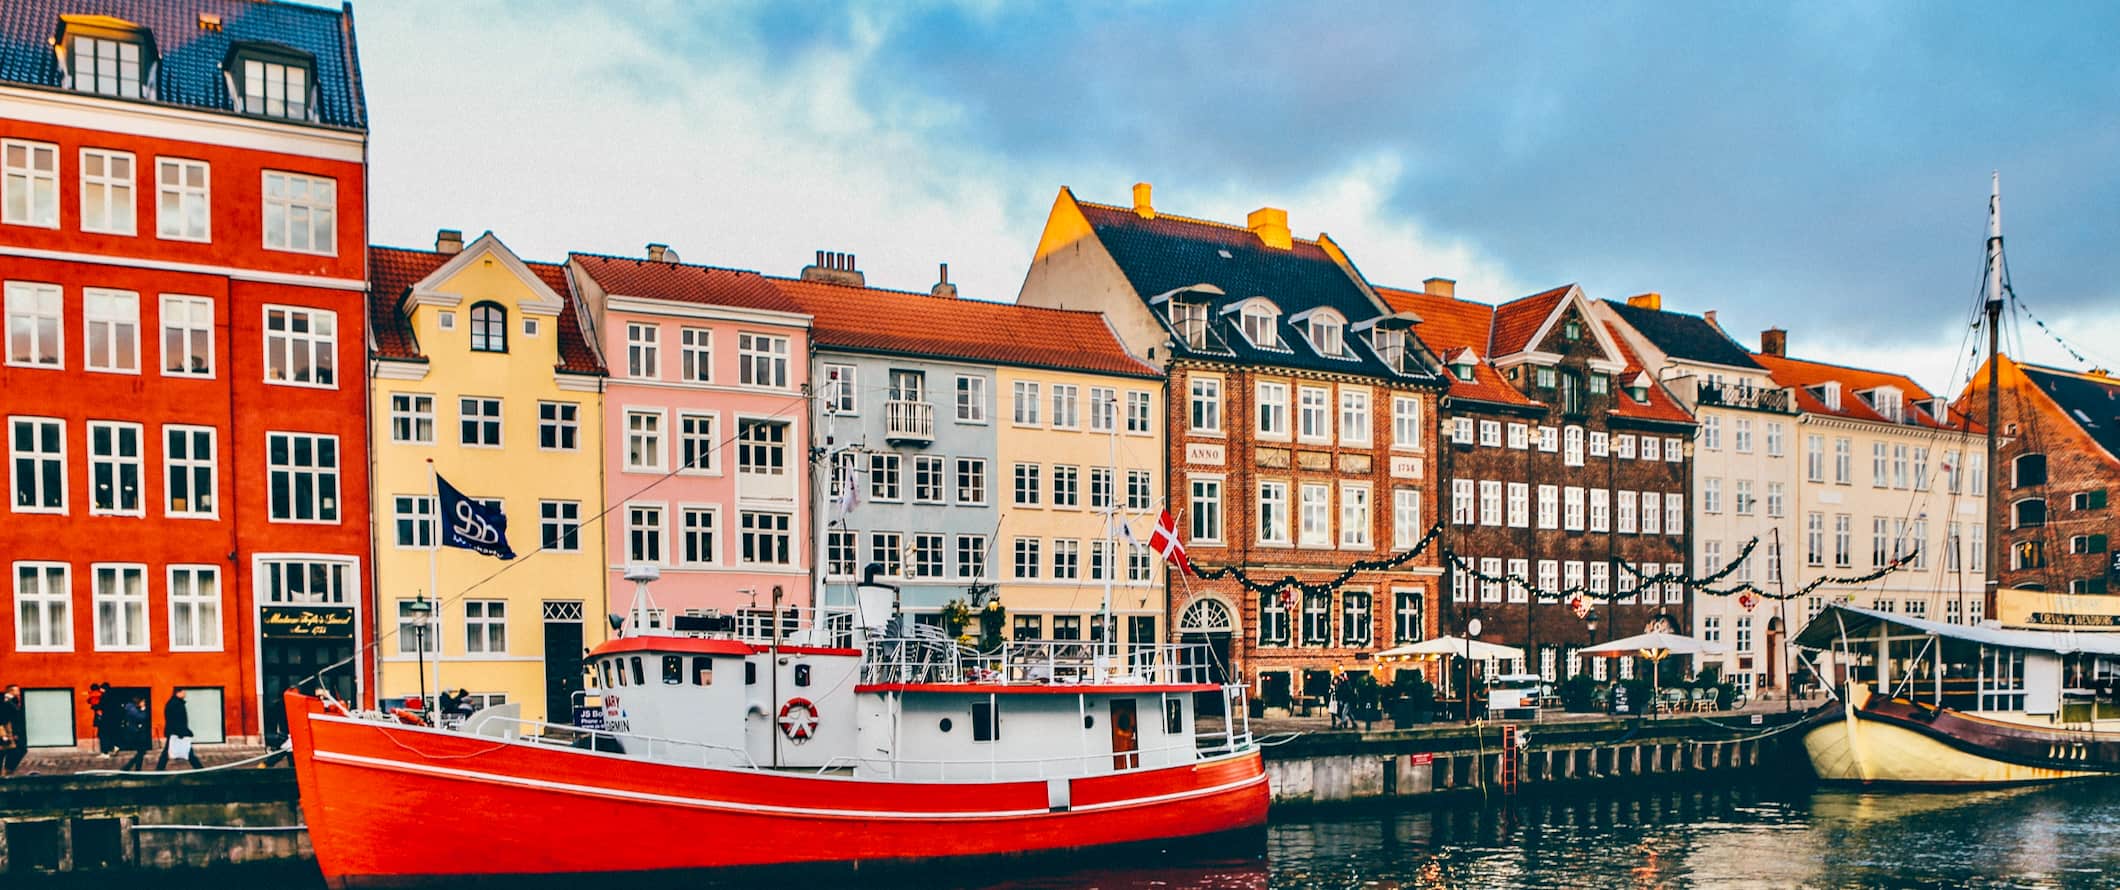 Ainda mais edifícios mult i-coloridos ao longo do canal com barcos em Copenhague, Dinamarca